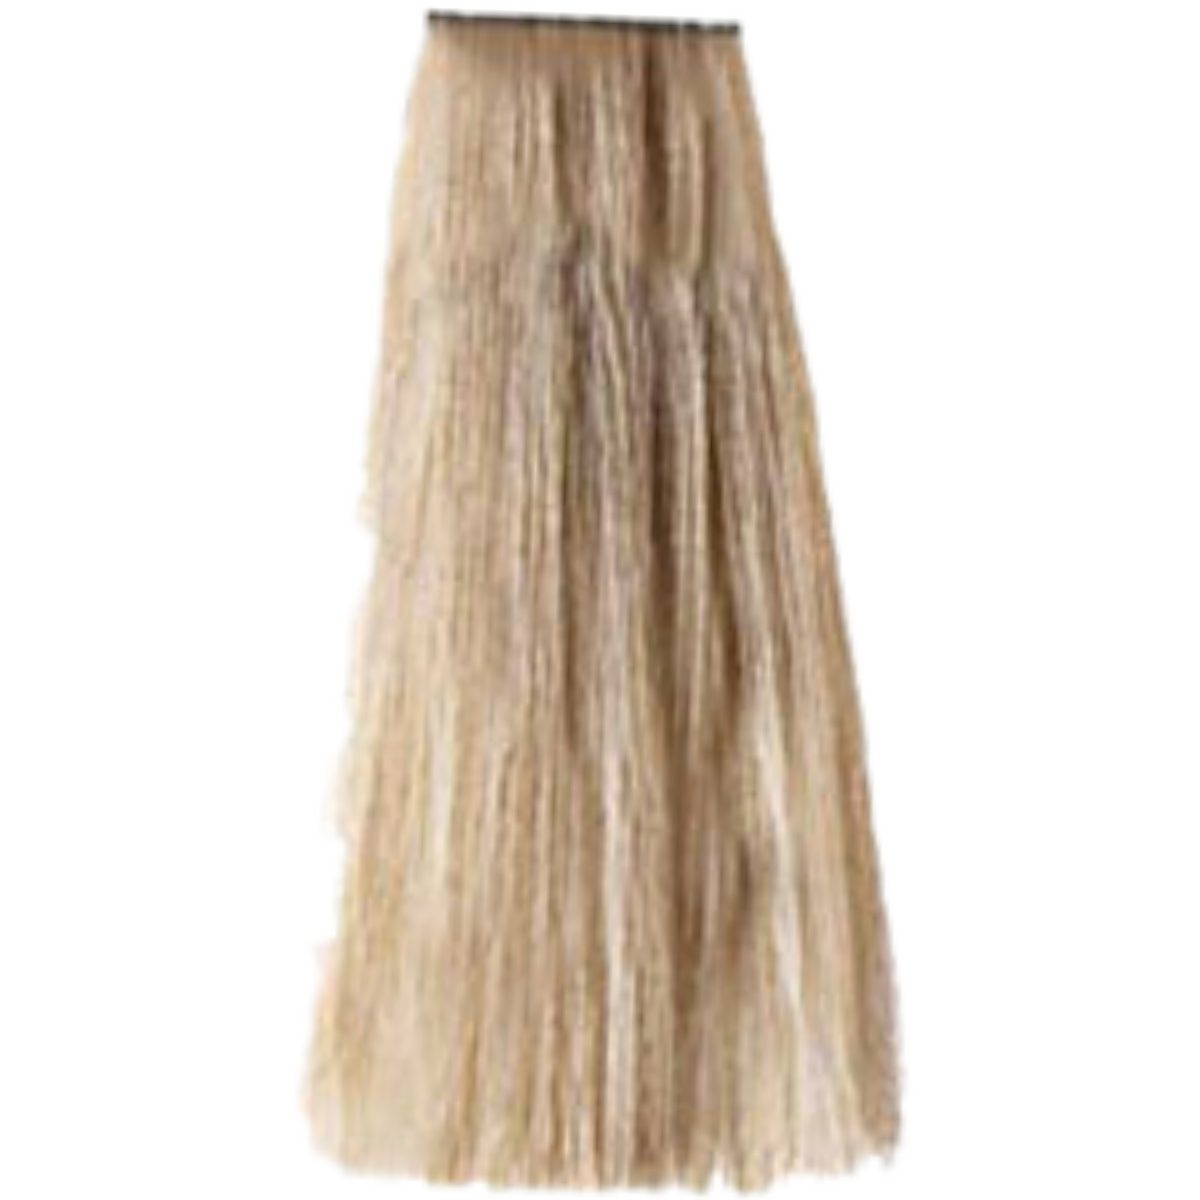 צבע שיער בסיס 9.0 NATURALS VERY LIGHT BLONDE פארמויטה FarmaVitaצ צבע לשיער 100 גרם